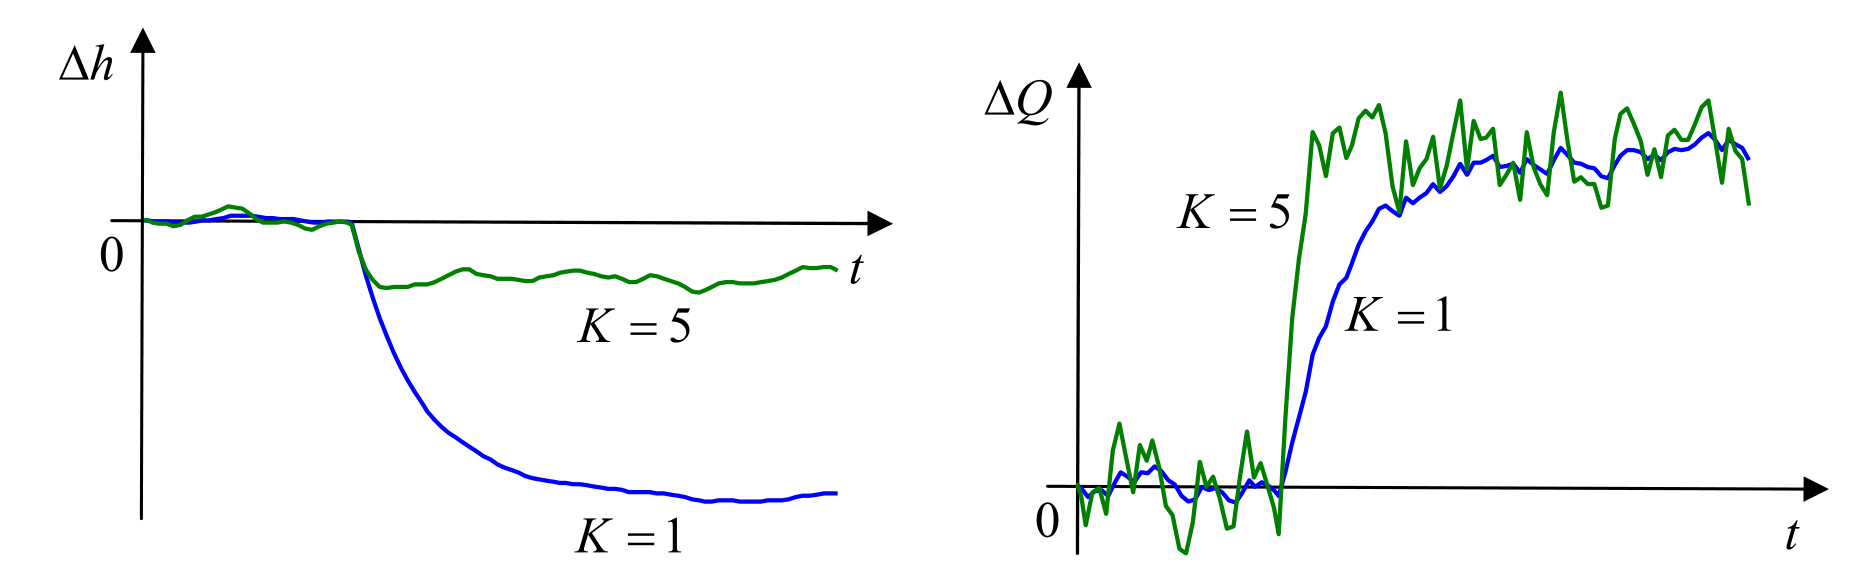 Работа регулятора при различных значениях коэффициента K, если есть шум измерений.